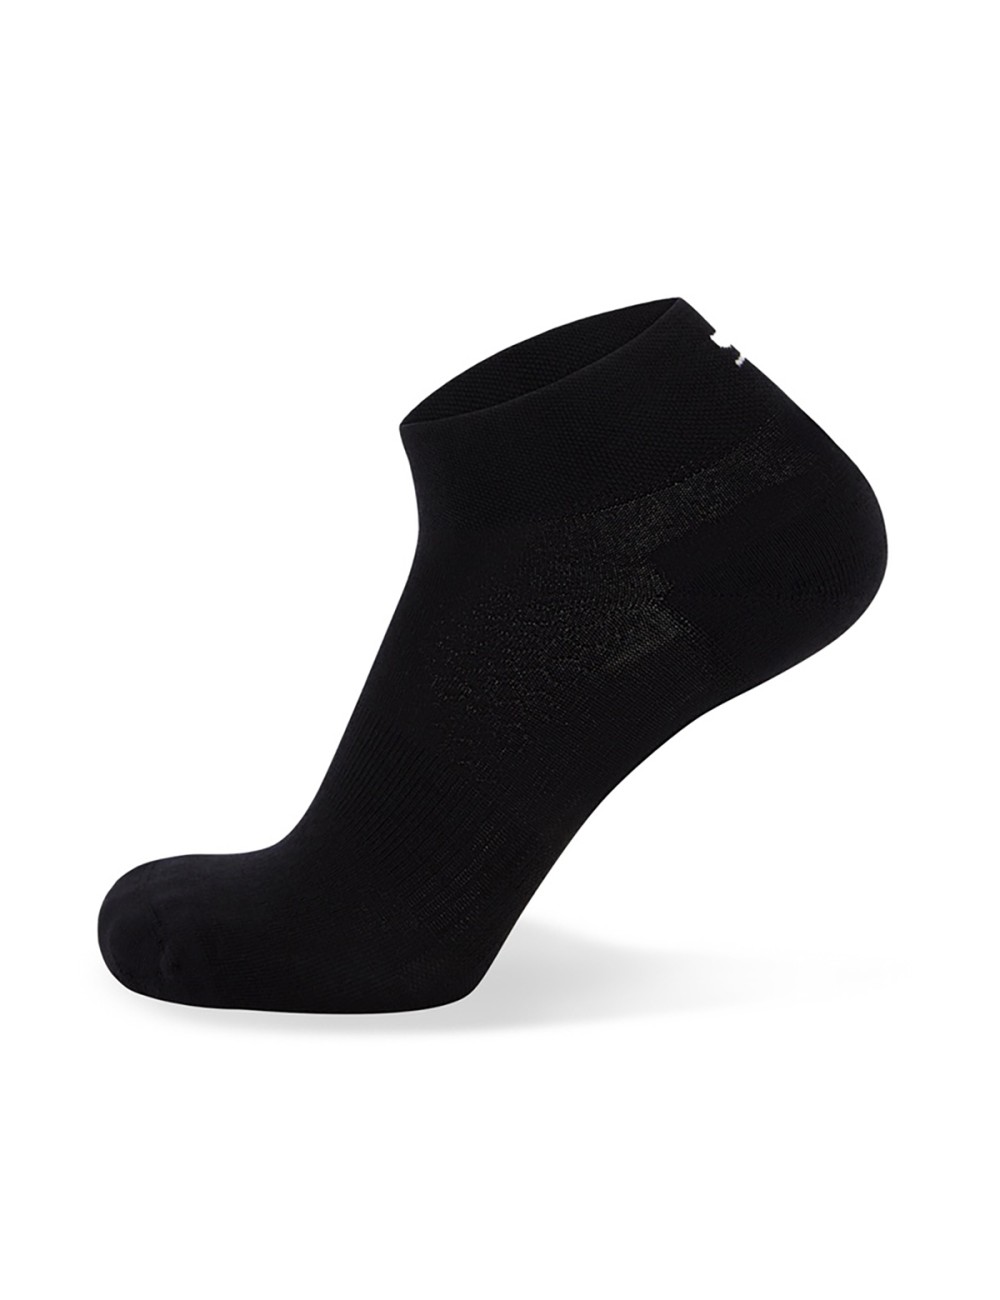 Mons Royale Atlas Ankle Socks - Black